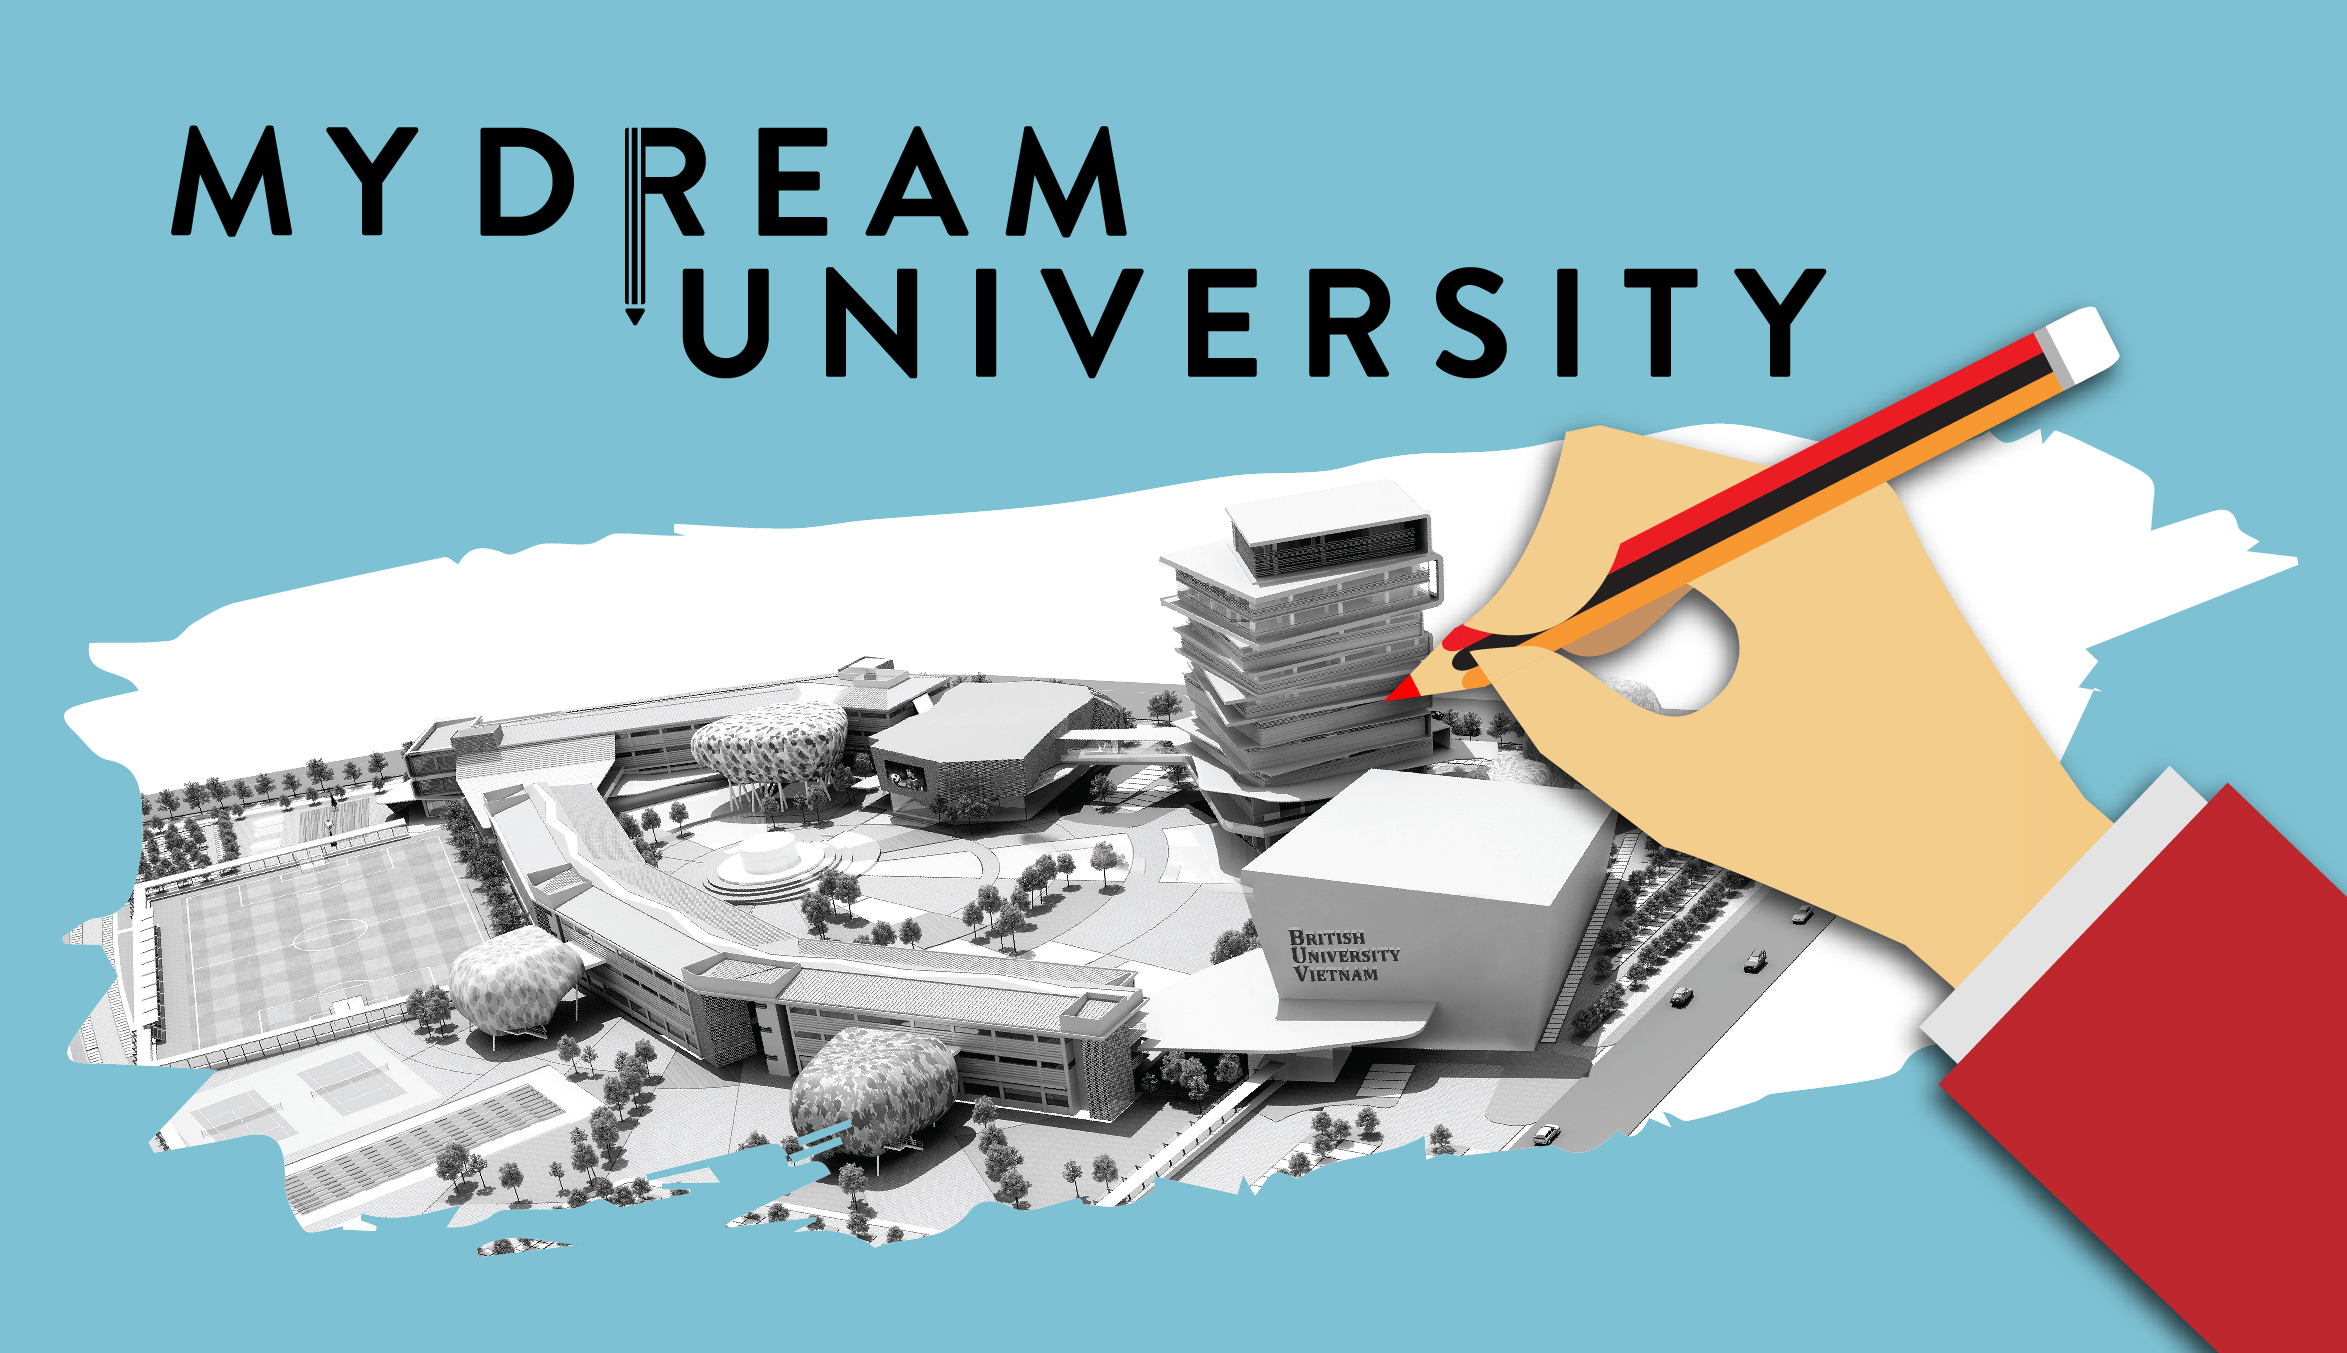 Liên kết đào tạo liên thông đại học là con đường hoàn thành giấc mơ đại học dang dở